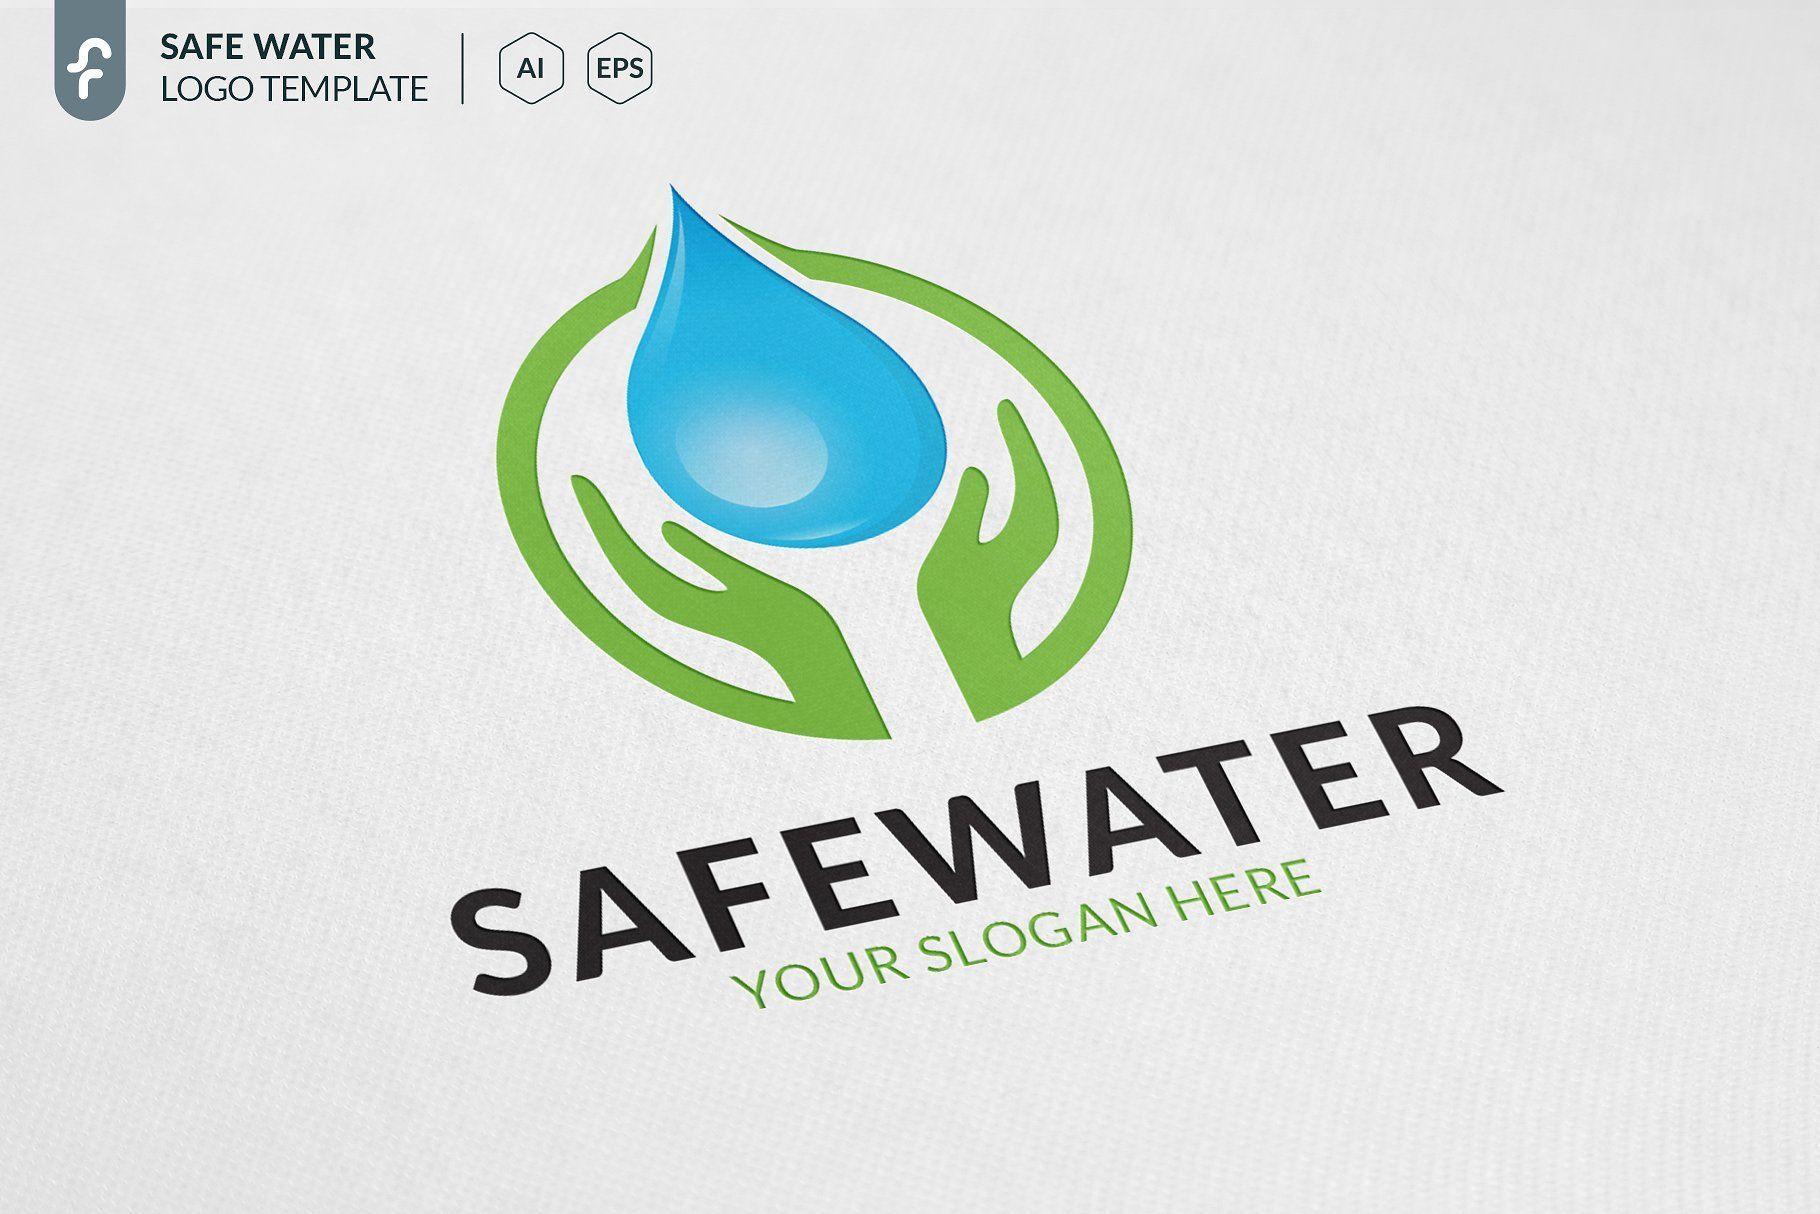 Modern Water Logo - Safe Water Logo #Water#Safe#Templates#Logo | Logos dEsign ...